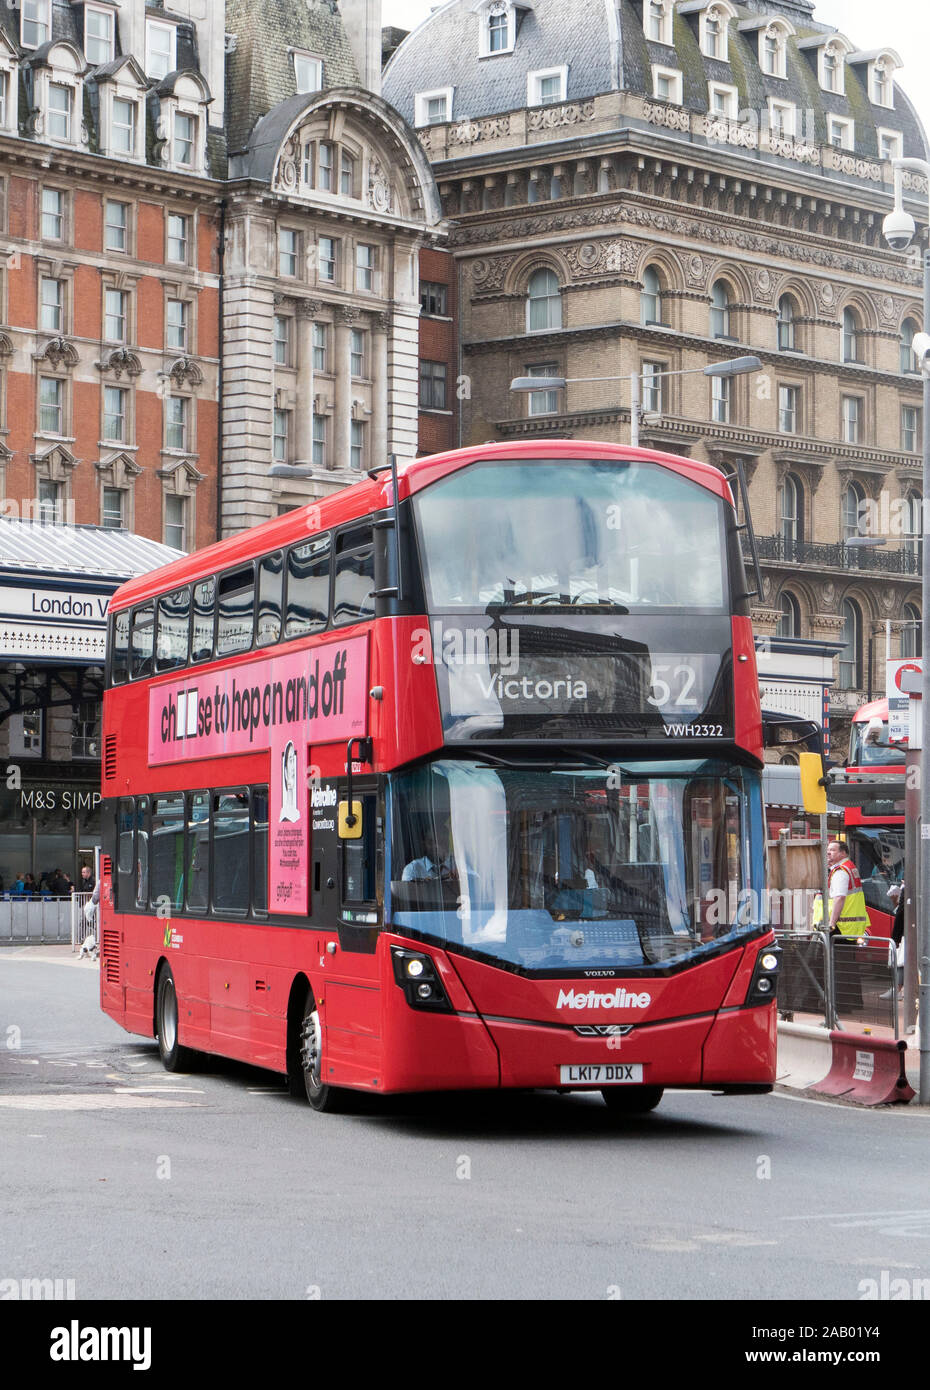 Autobuses rojos de dos pisos de la estación Victoria de Londres, Inglaterra Foto de stock